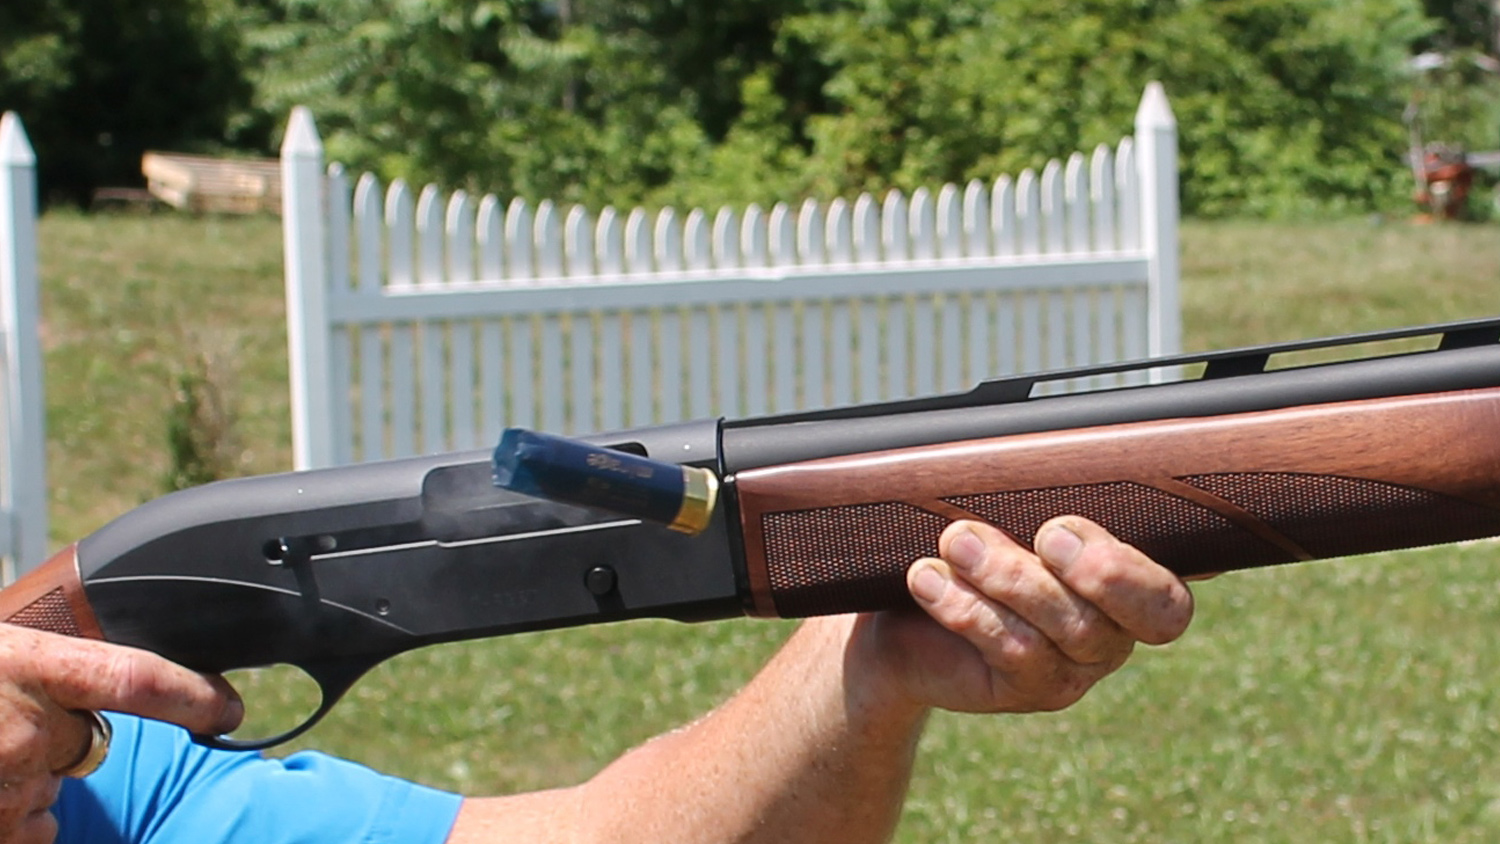 CZ 712 G2 12-gauge shotgun